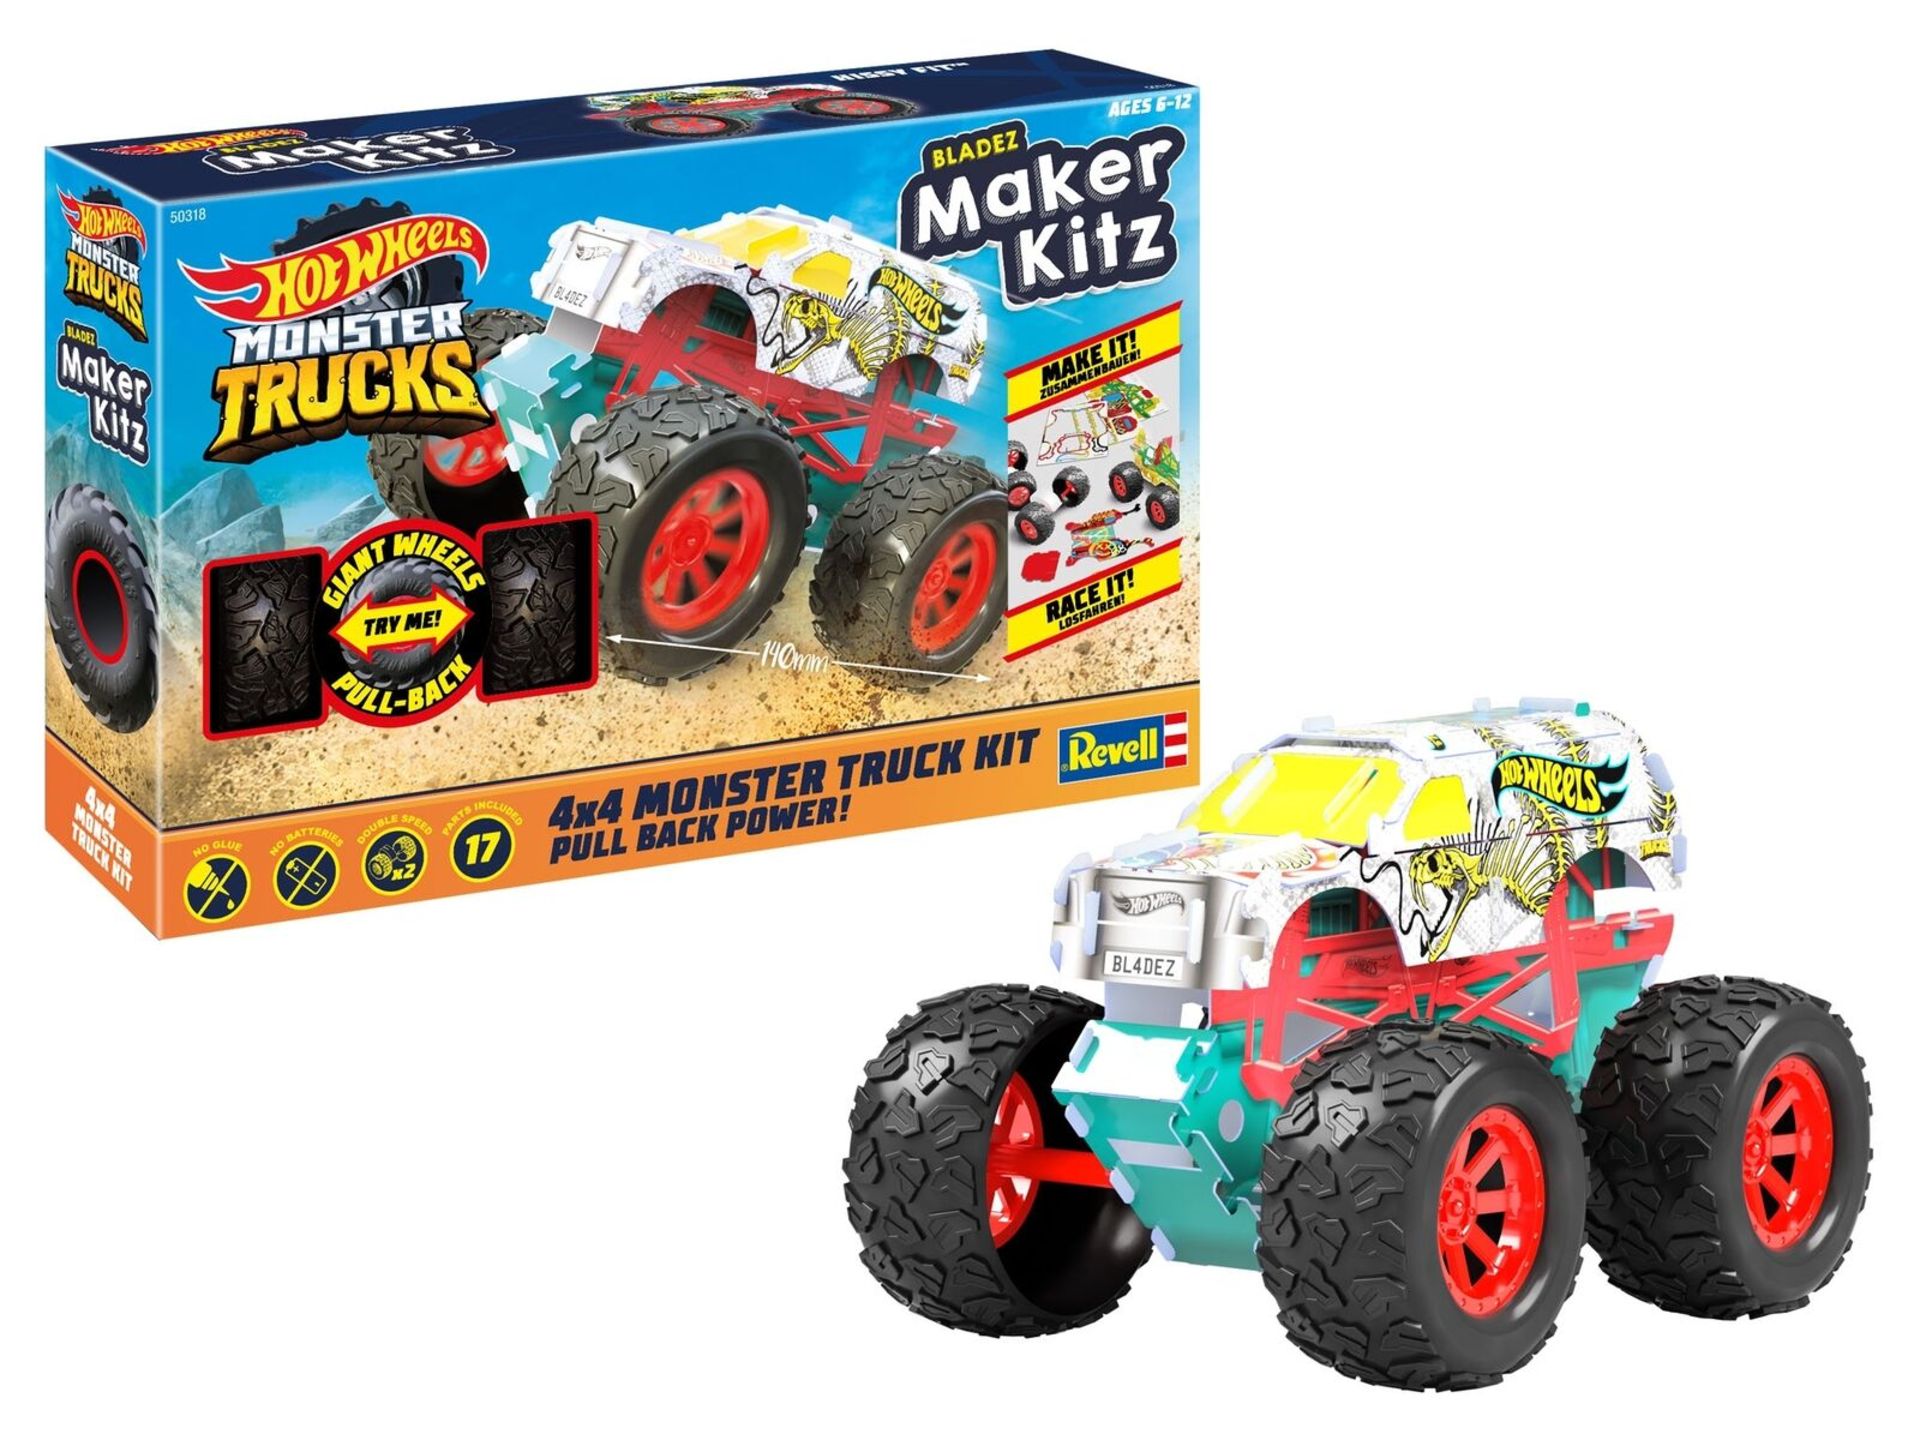 RRP £13.99 - New Hot Wheels Missy Fit Monster Trucks Maker Kit, Pull Back Power